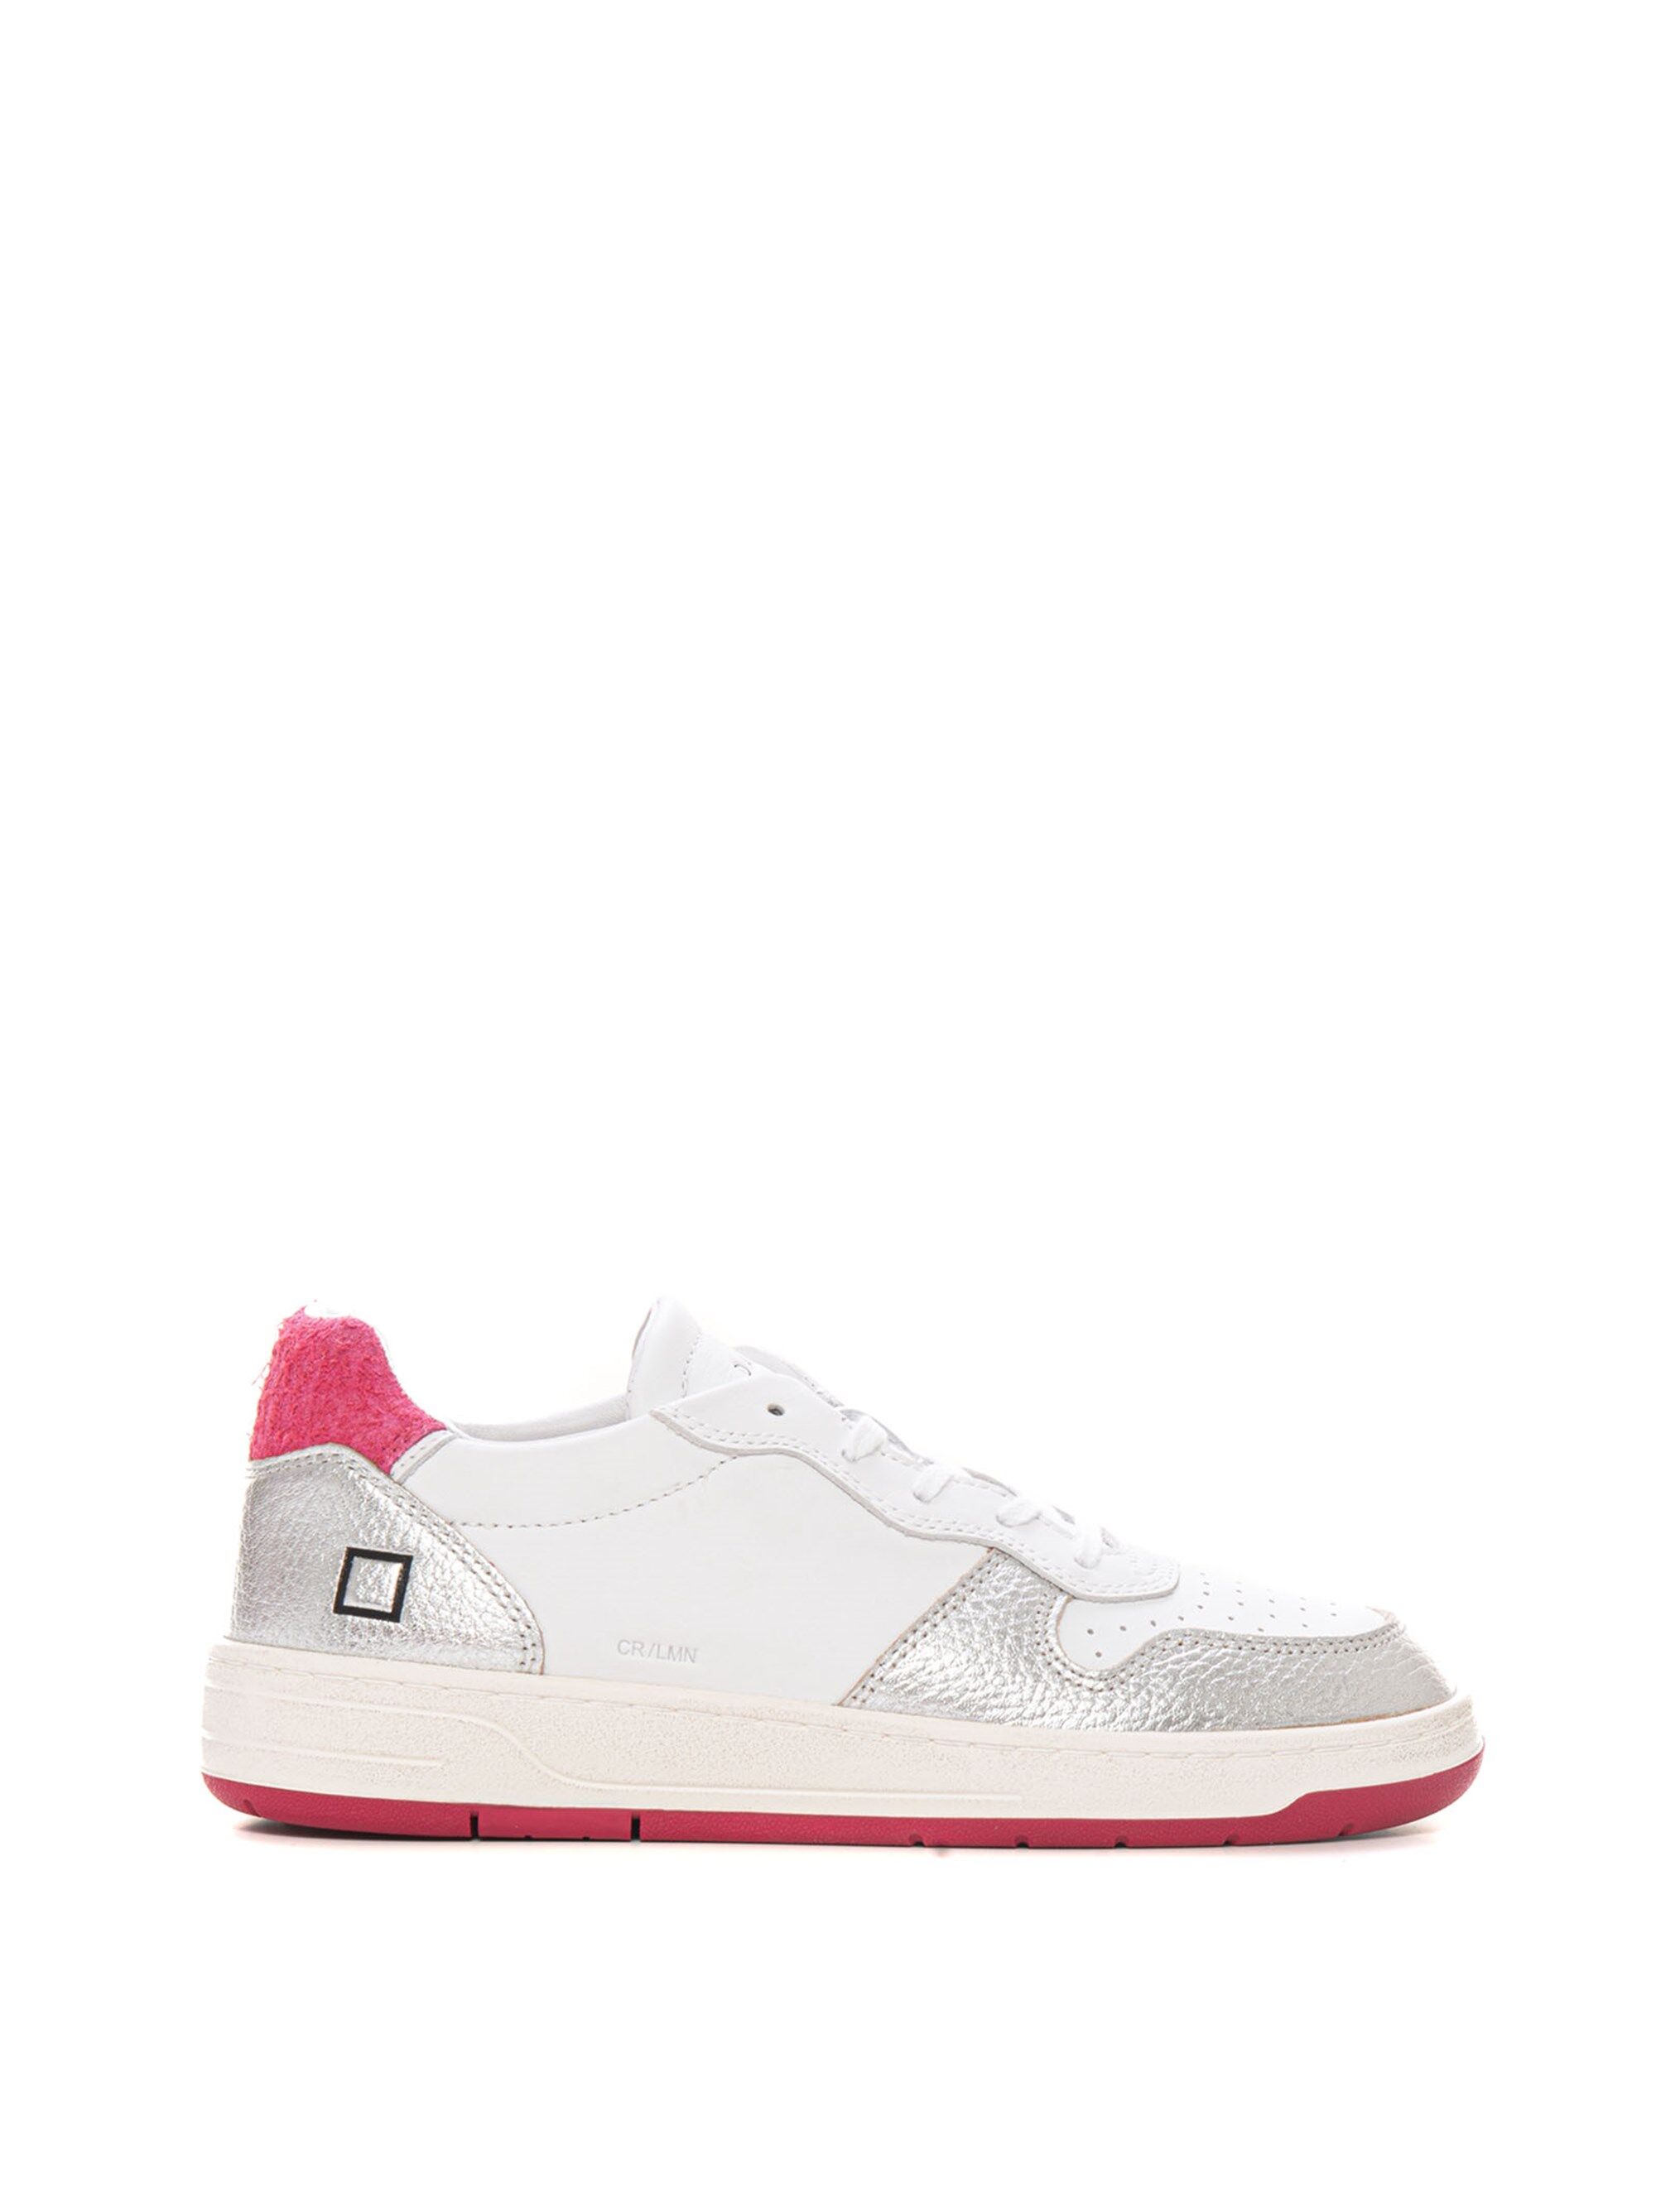 D.A.T.E. Sneakers con lacci COURT LAMINATED Bianco-argento Donna 39